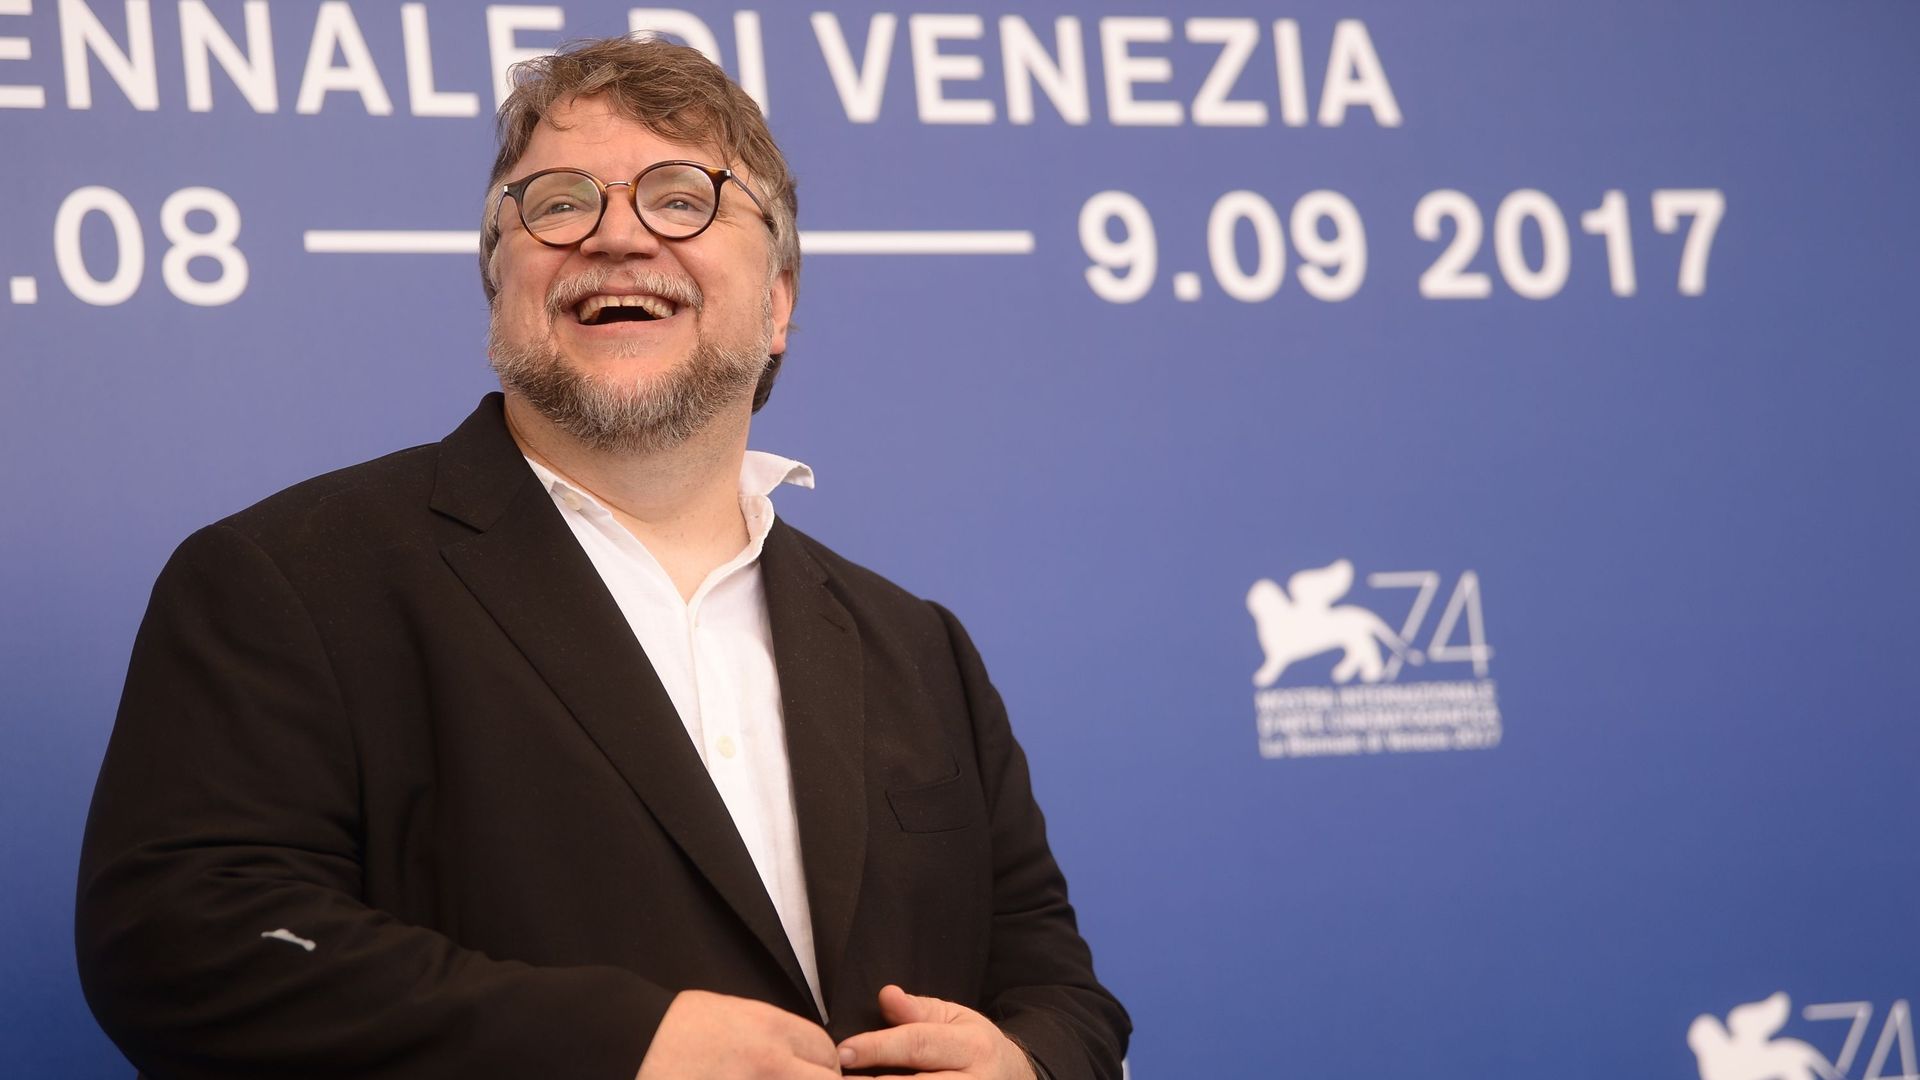 Le réalisateur Guillermo del Toro présentait The Shape of Water, le 31 août 2017 à Venise.